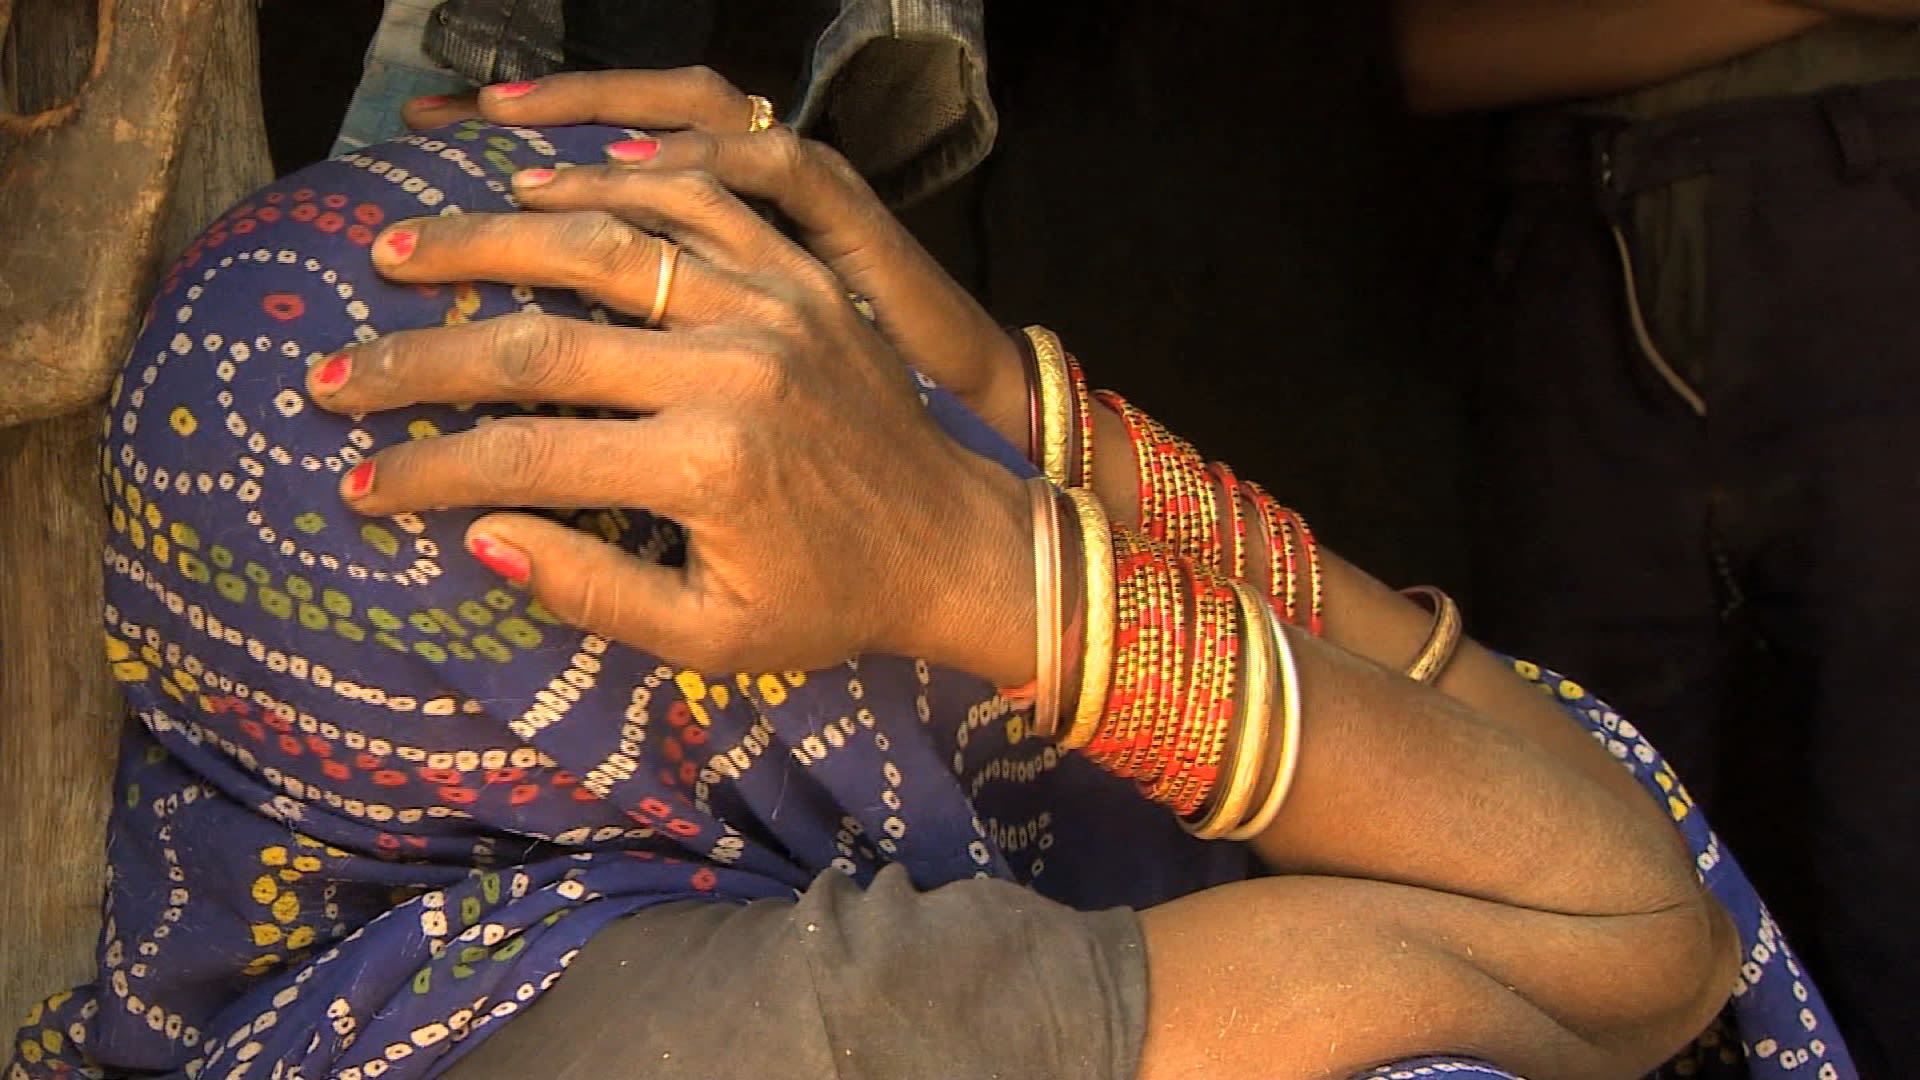 Indian Rape Hot Xxx - Third Indian allegedly raped, set on fire | CNN